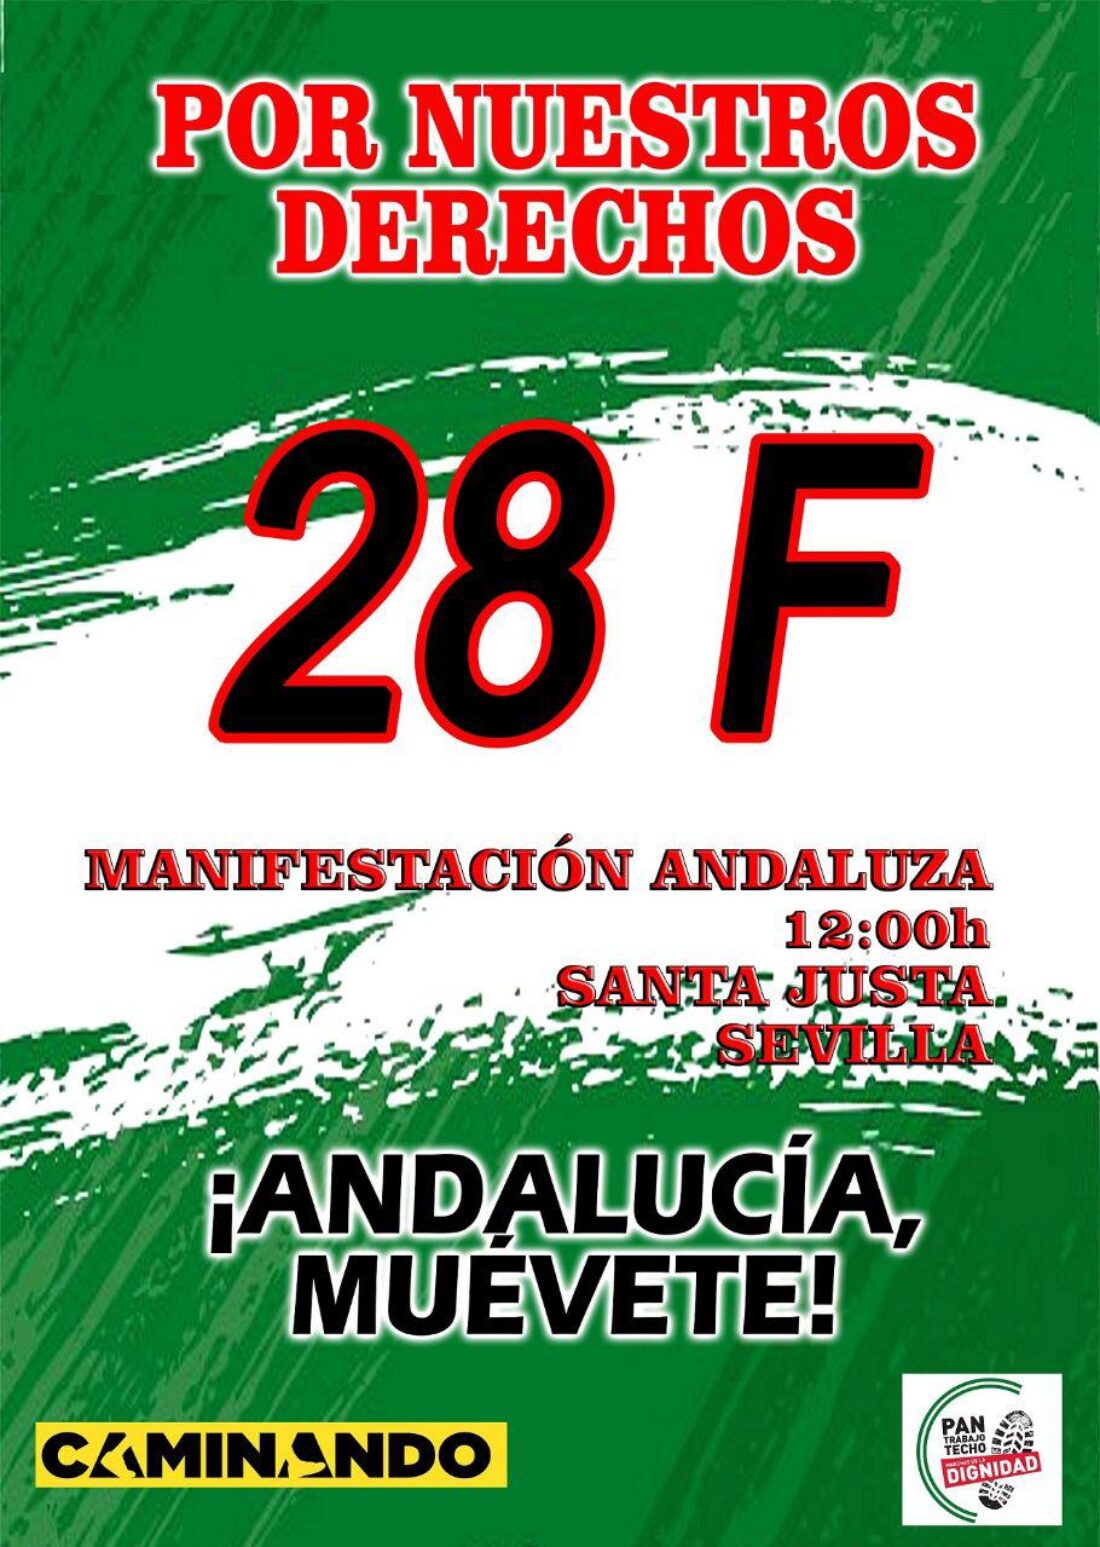 CGT participará activamente en la manifestación del 28F en Sevilla